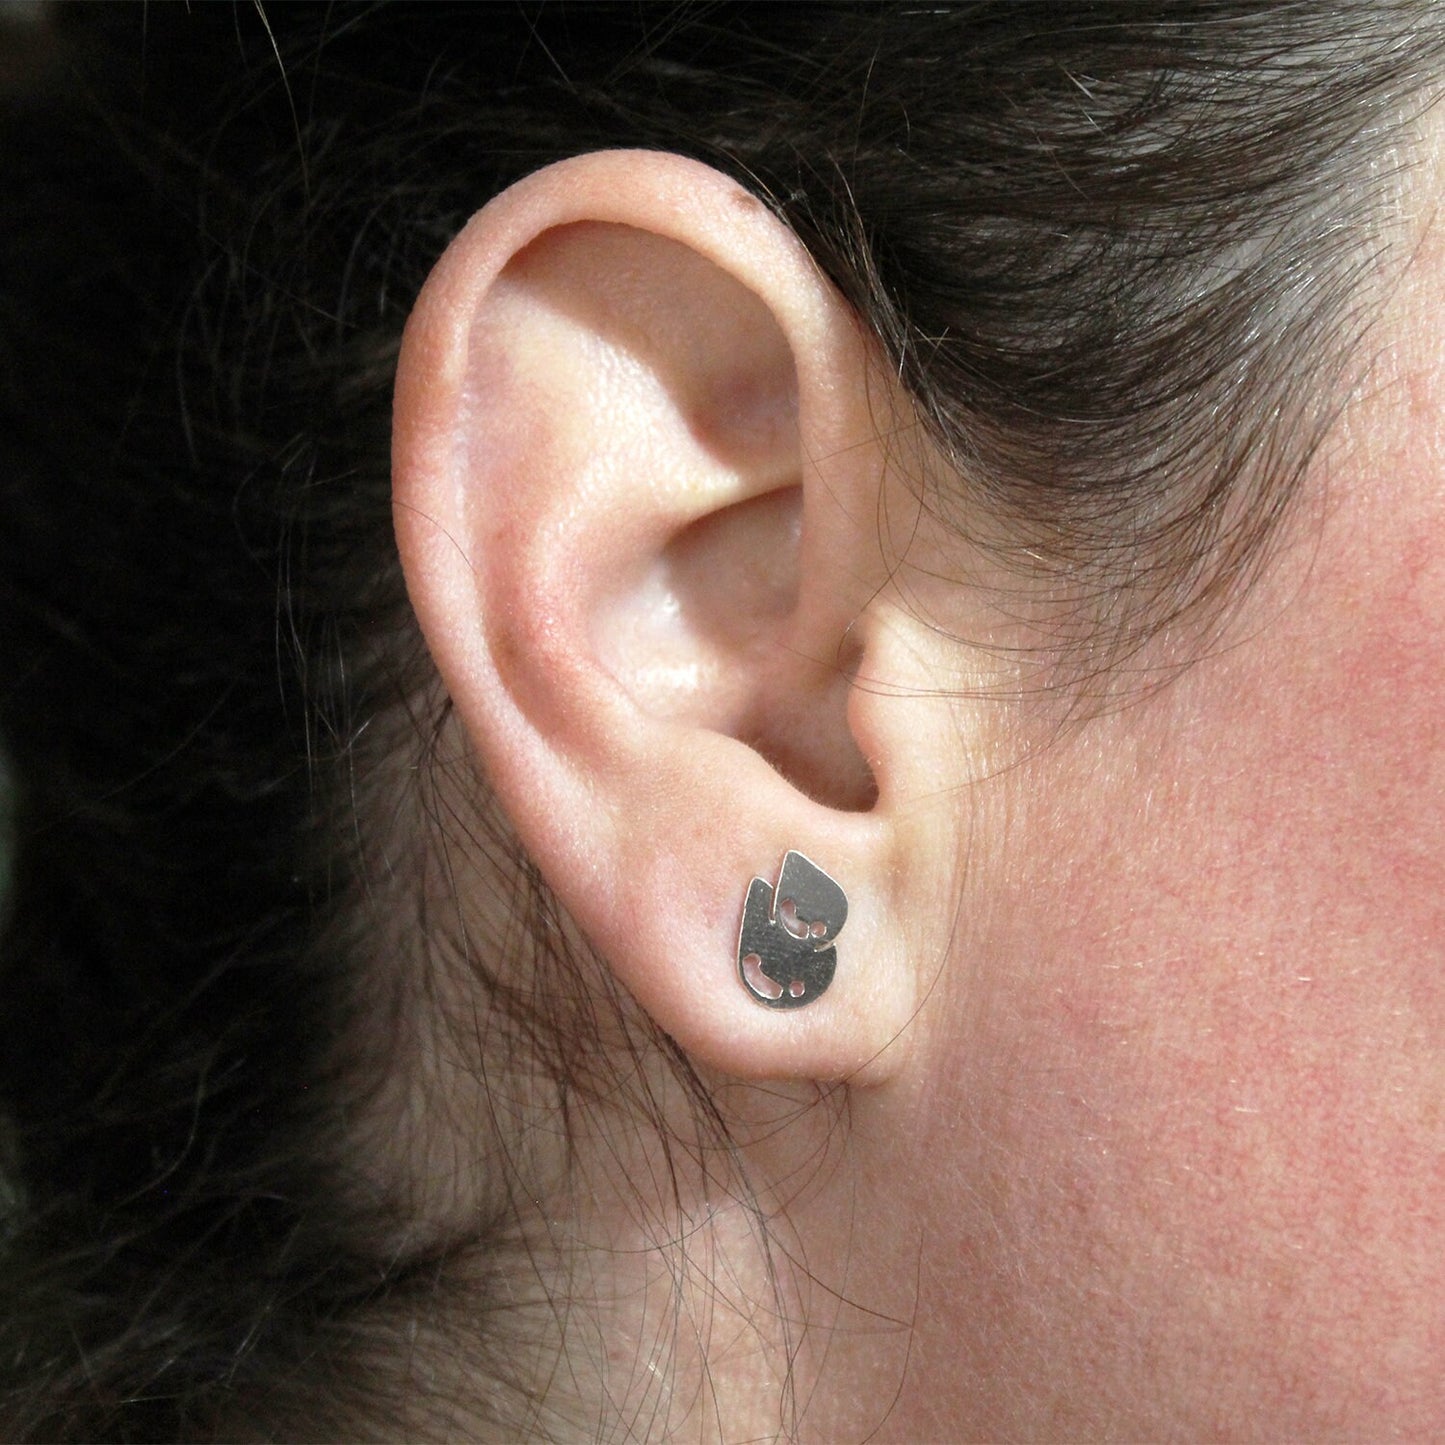 Dangerdoll earrings in 925 silver.